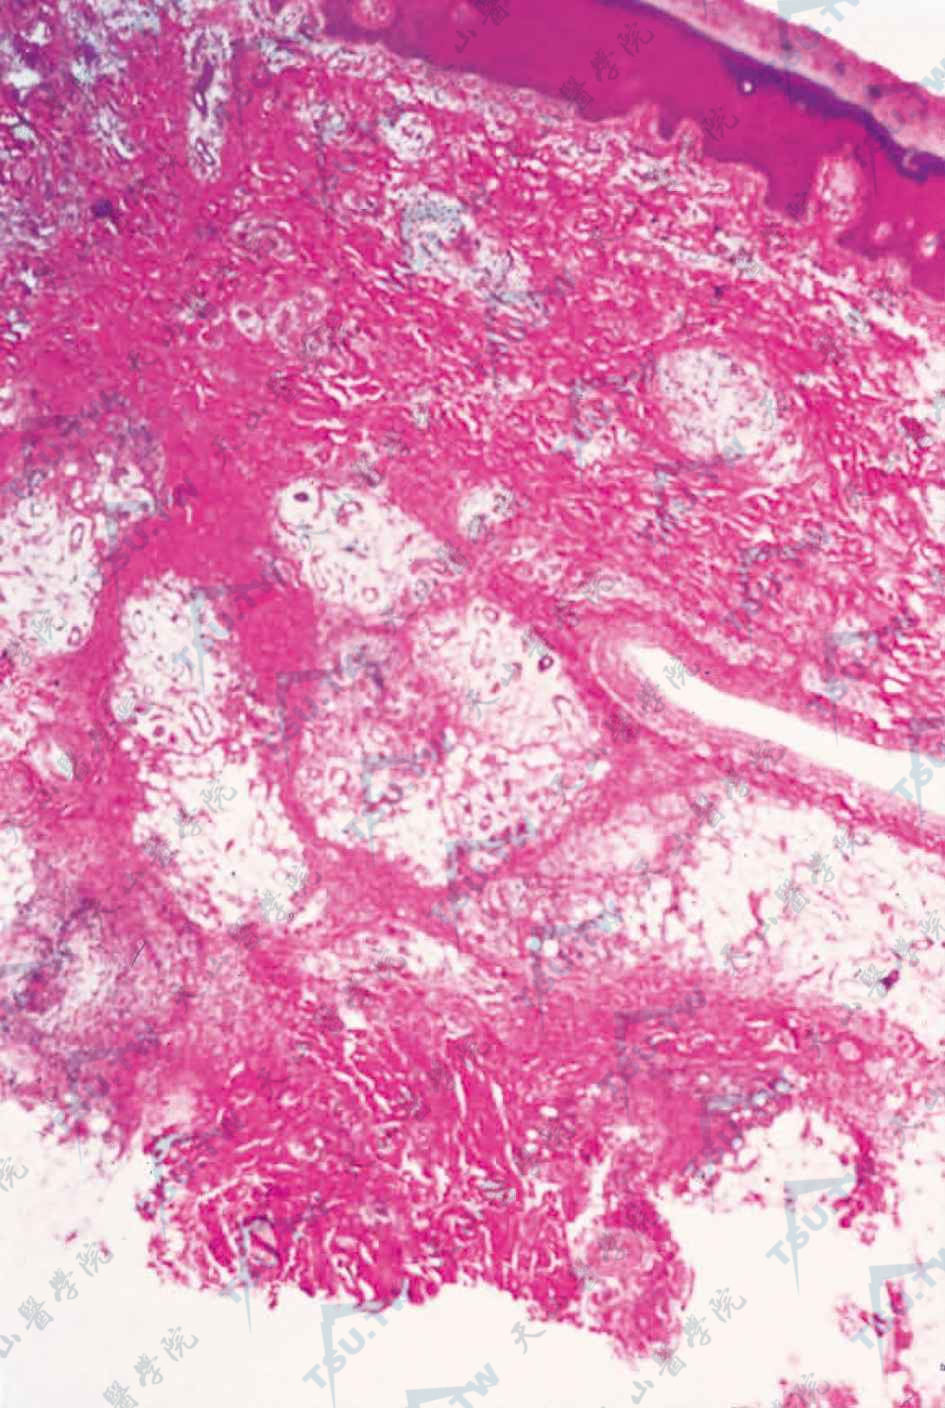 浅表脂肪瘤样痣组织病理学改变：真皮中上部散在小灶性脂肪细胞（HE染色×100）